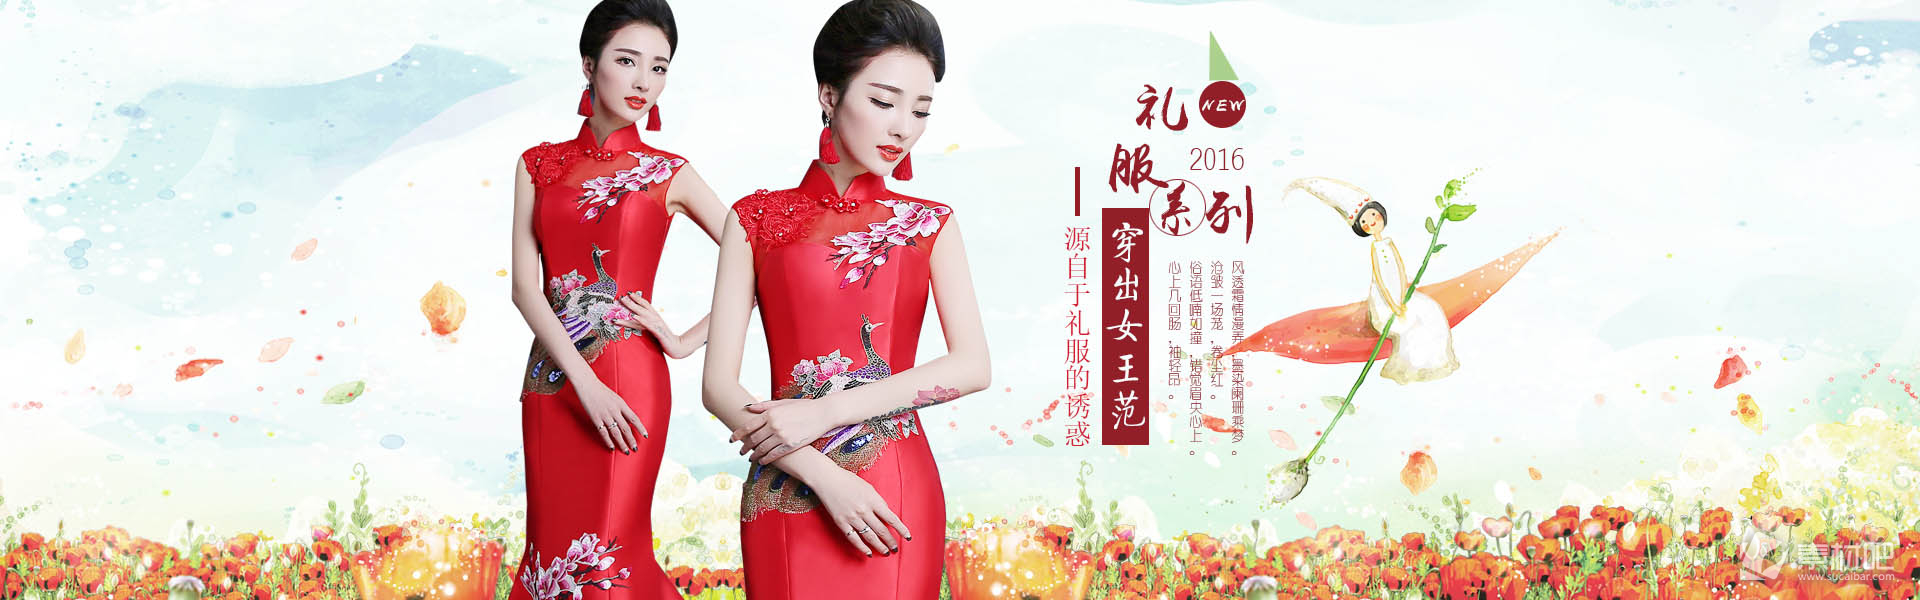 中式新娘礼服海报PSD素材下载